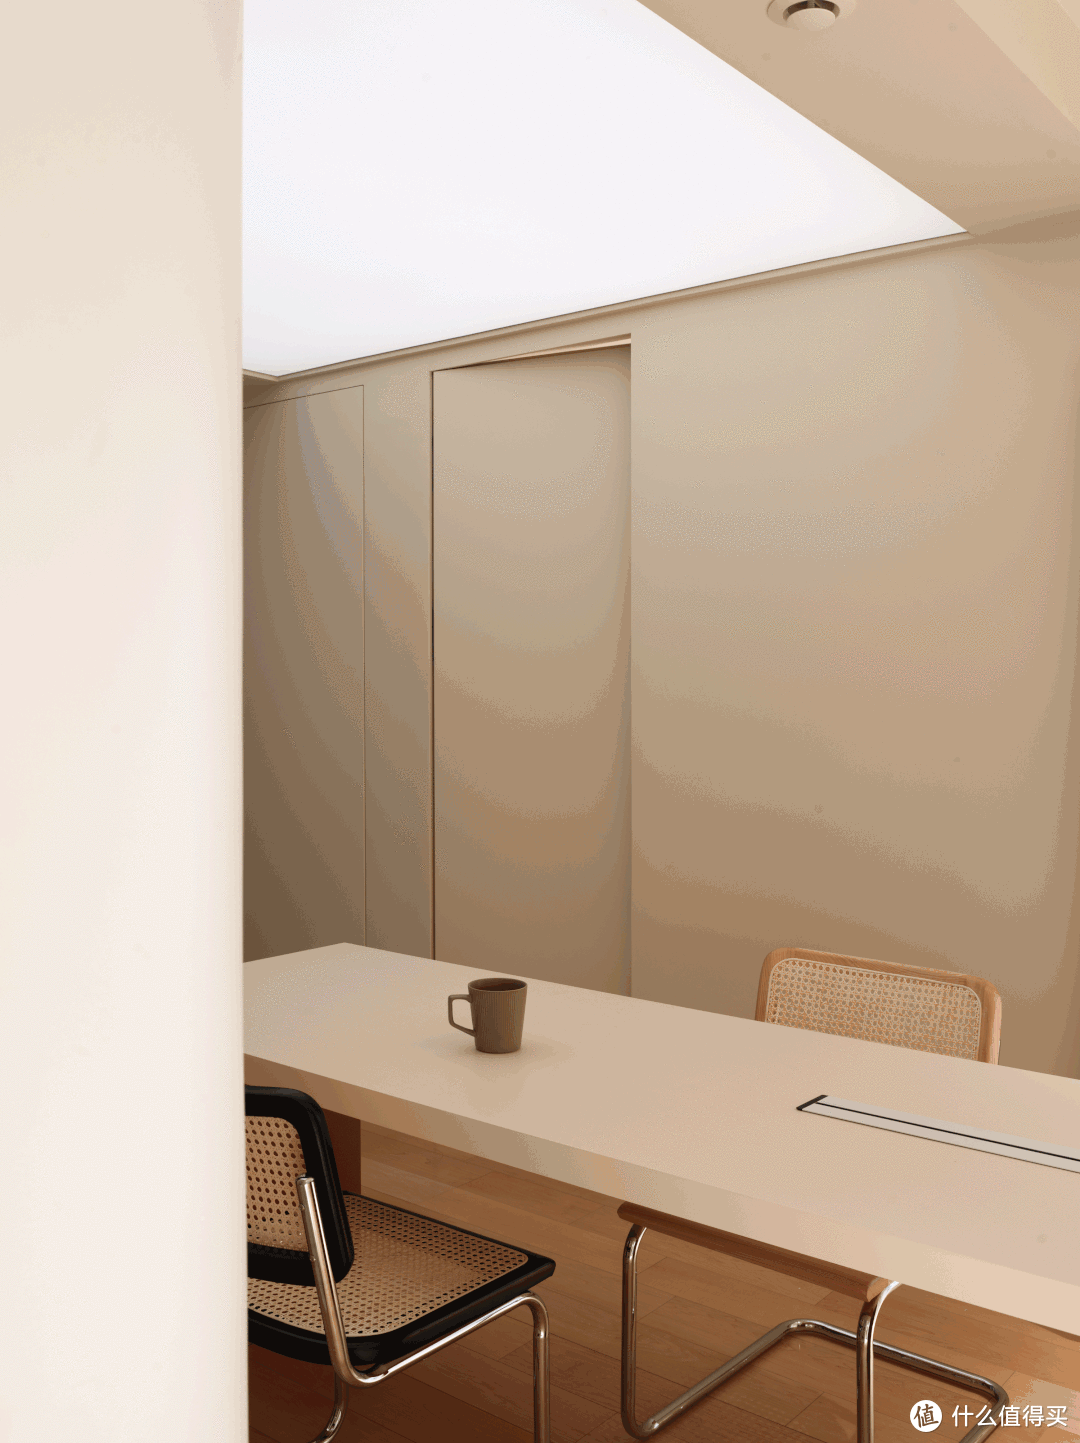 在客餐厅看，卧室门均为隐形门。这样线条简洁，空间感更完整。